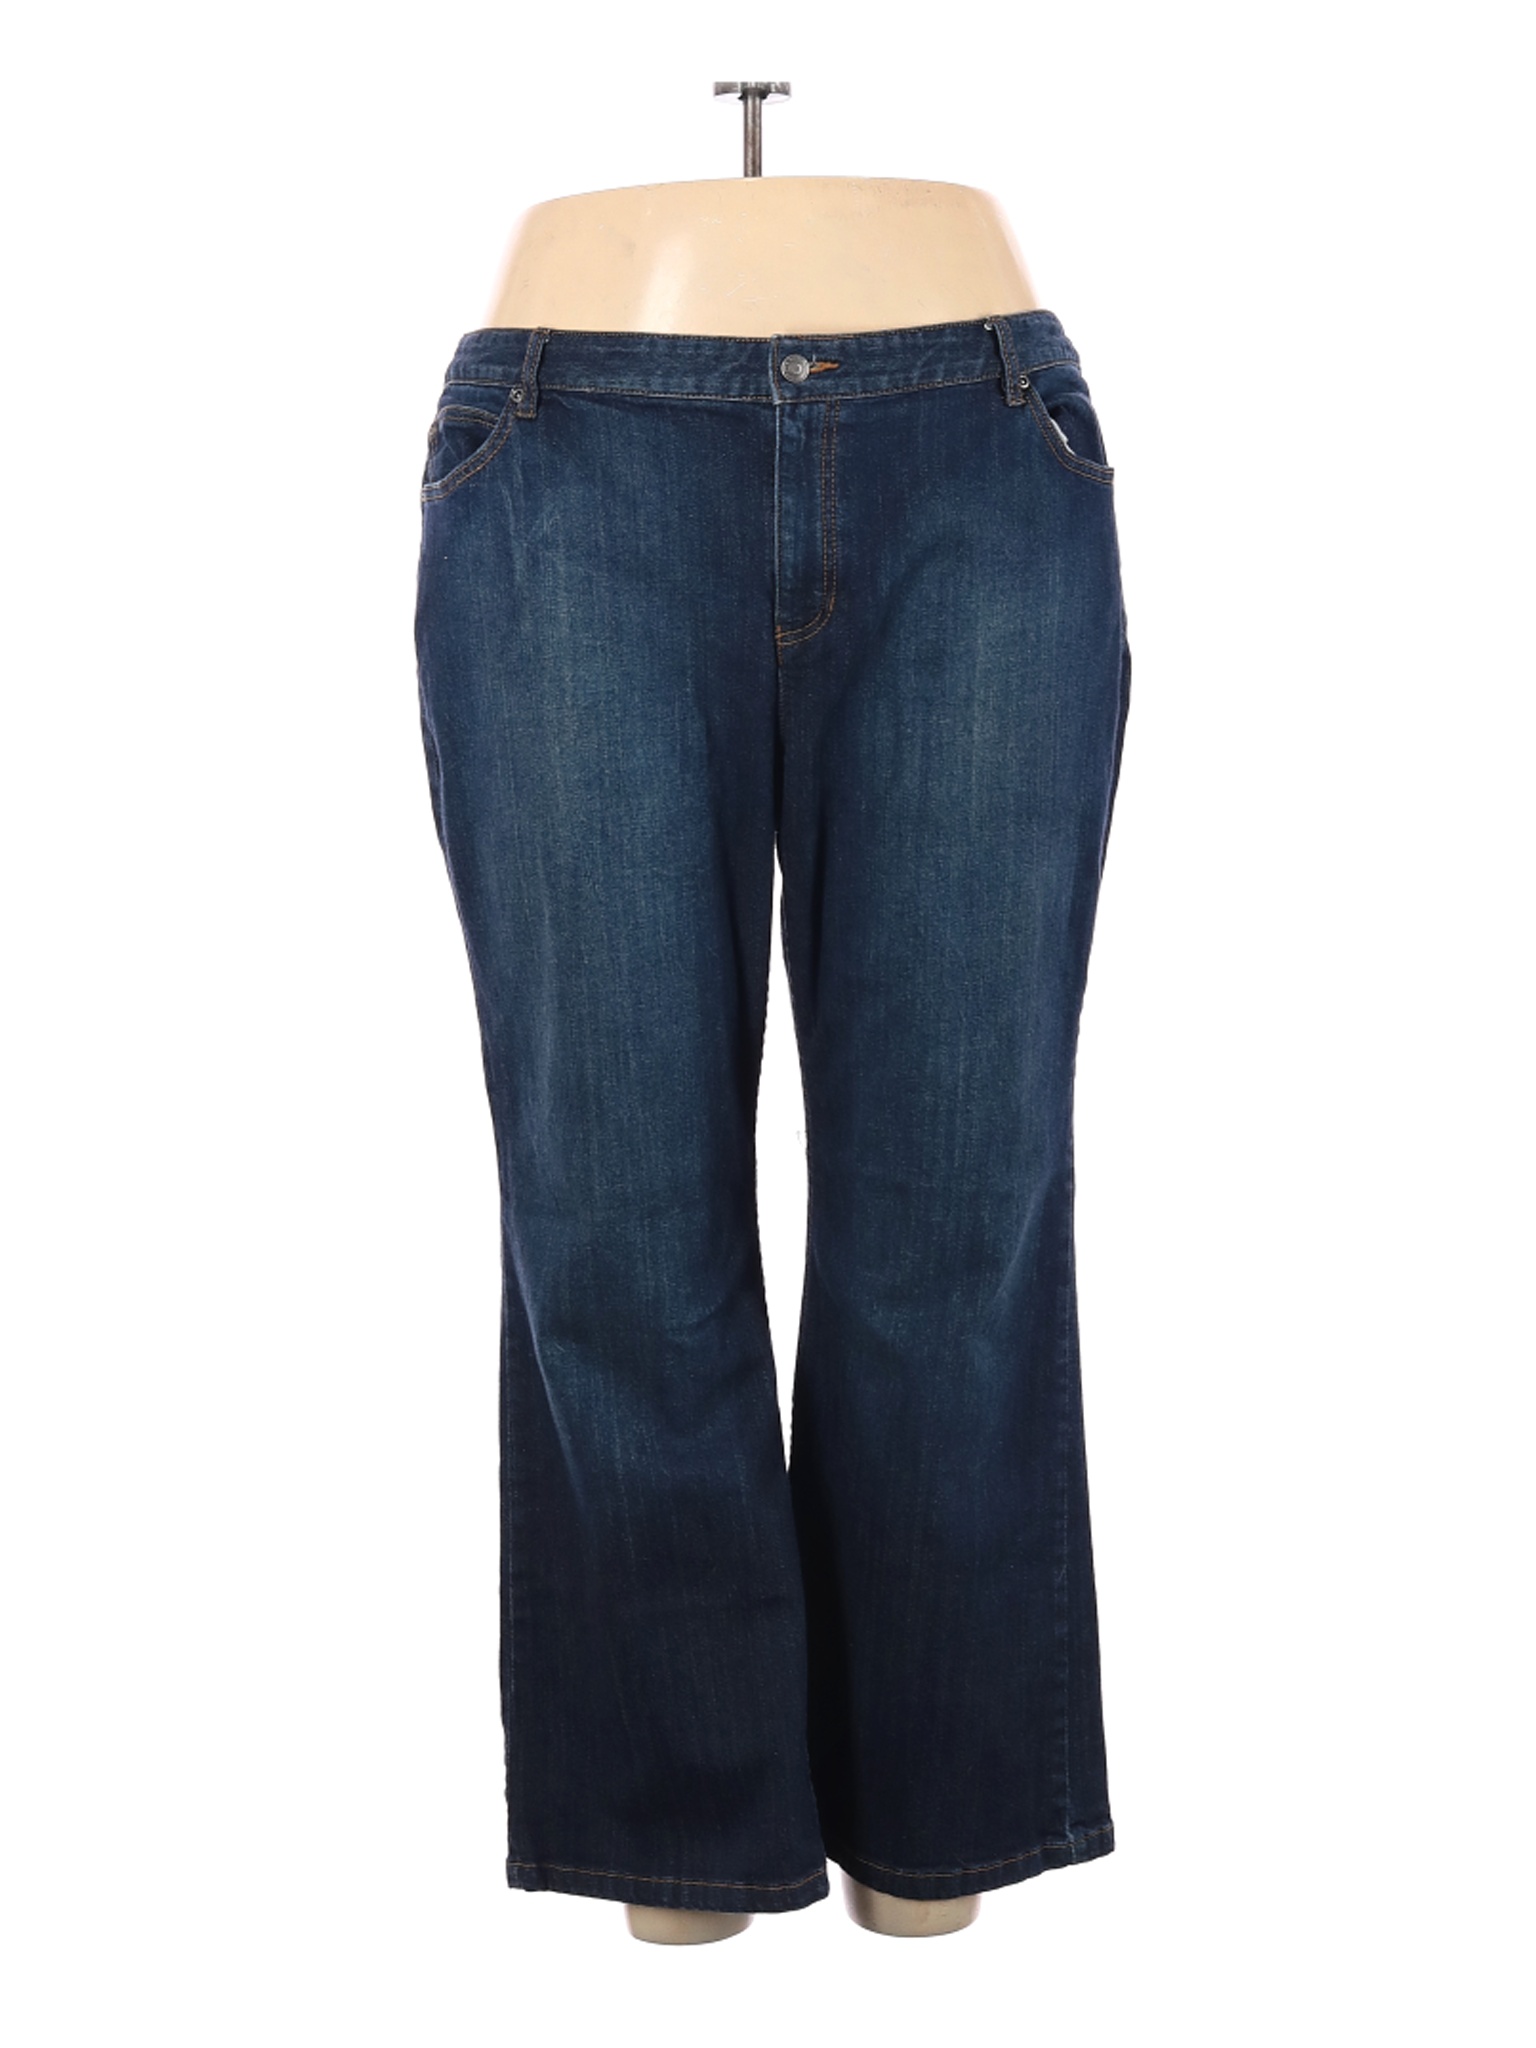 Liz Claiborne Plus Women Blue Jeans 24 Plus | eBay